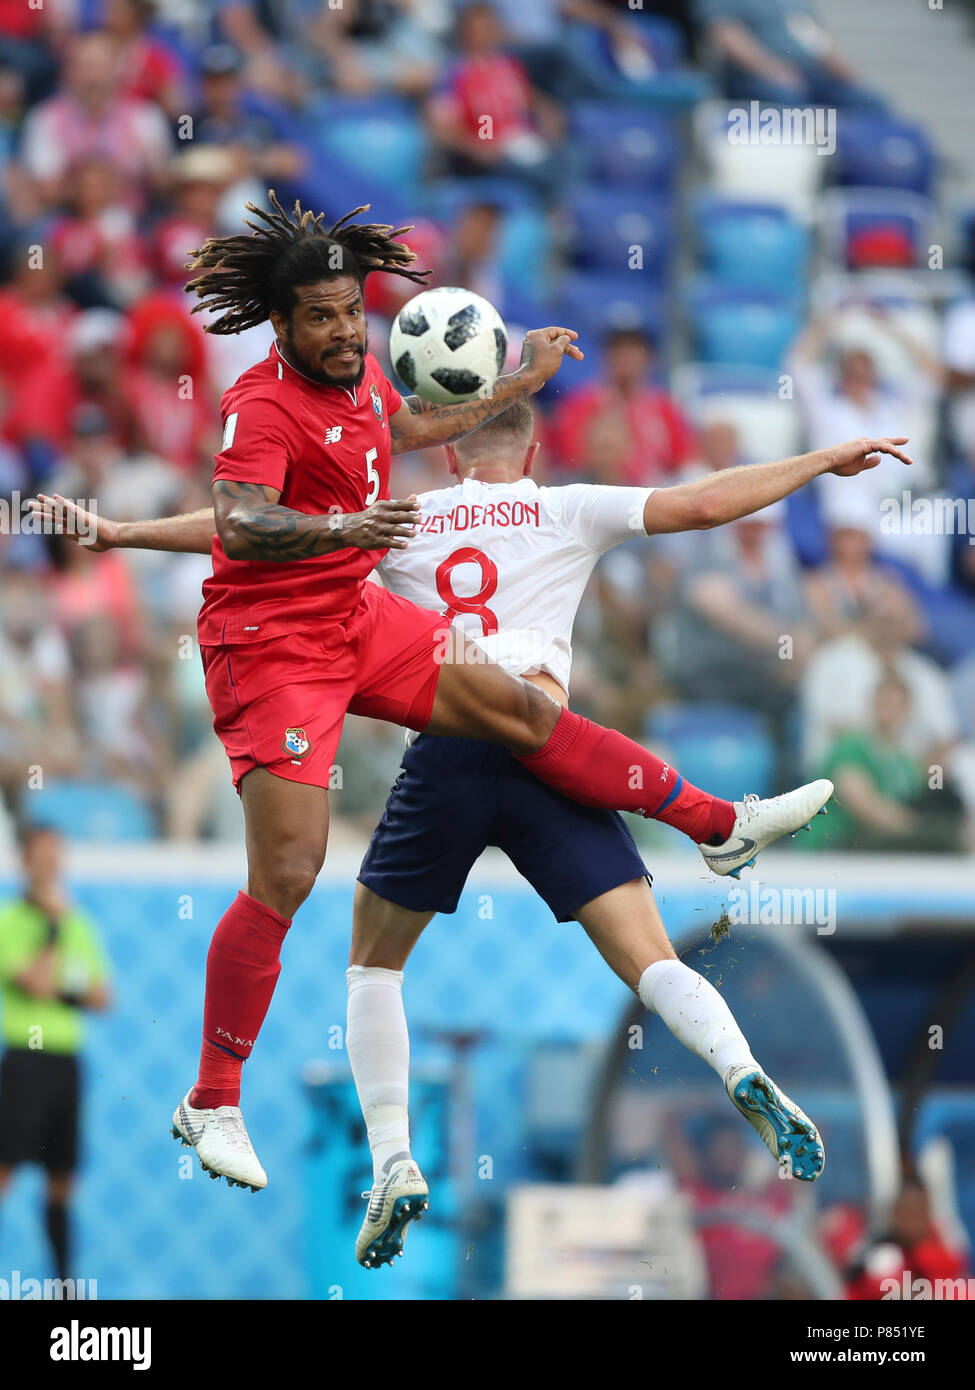 Roman Torres do Panama disputa a bola com time da Inglaterra realizada neste domingo, 24, no Estádio Nizhny Novgorod, na Rússia, válida pela 2ª rodada do Grupo G da Copa do Mundo 2018. Stock Photo